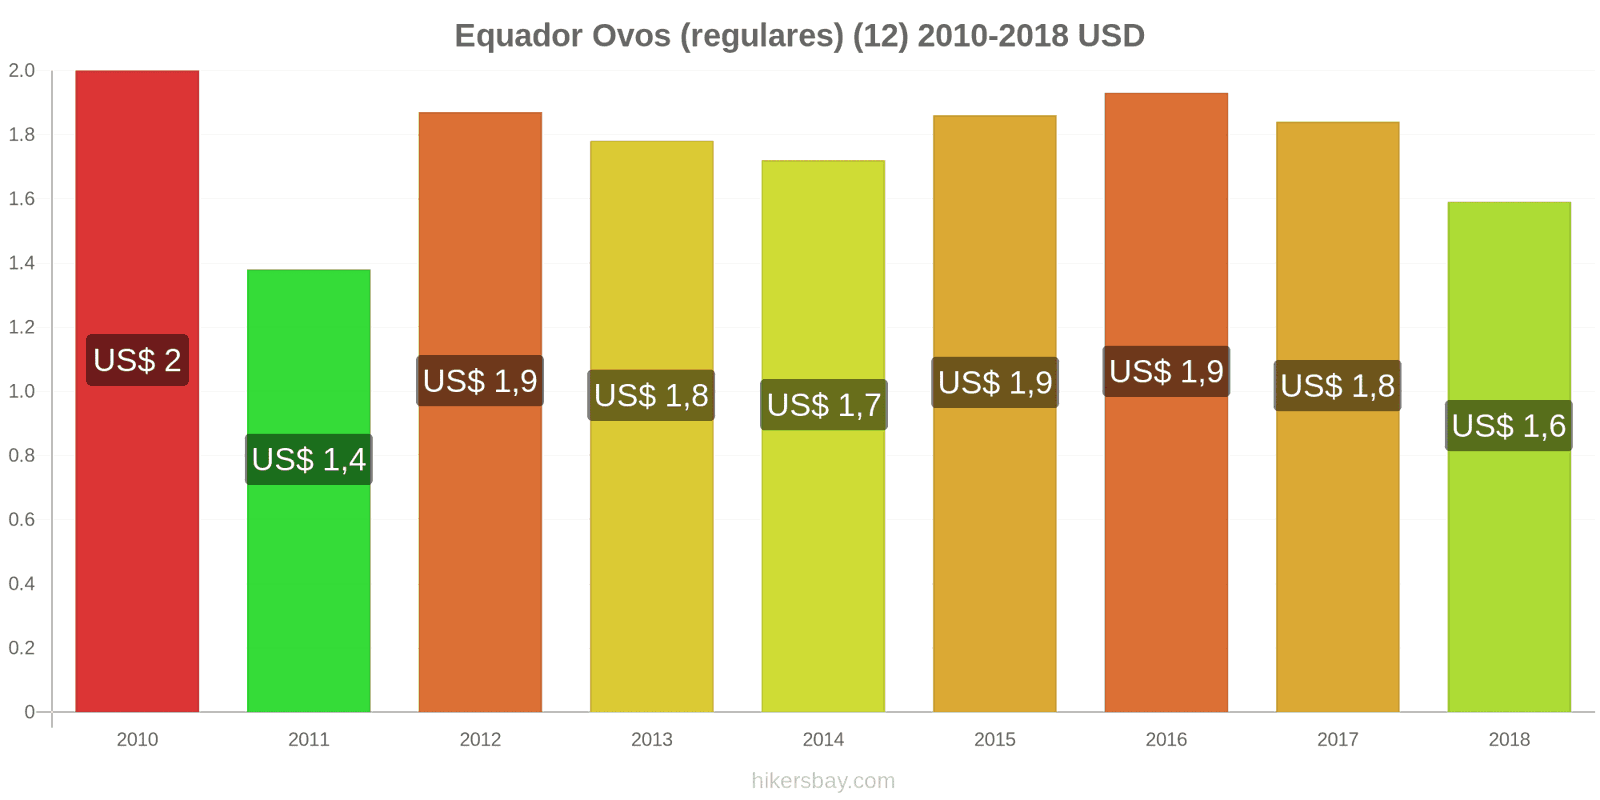 Equador mudanças de preços Ovos (normais) (12 unidades) hikersbay.com